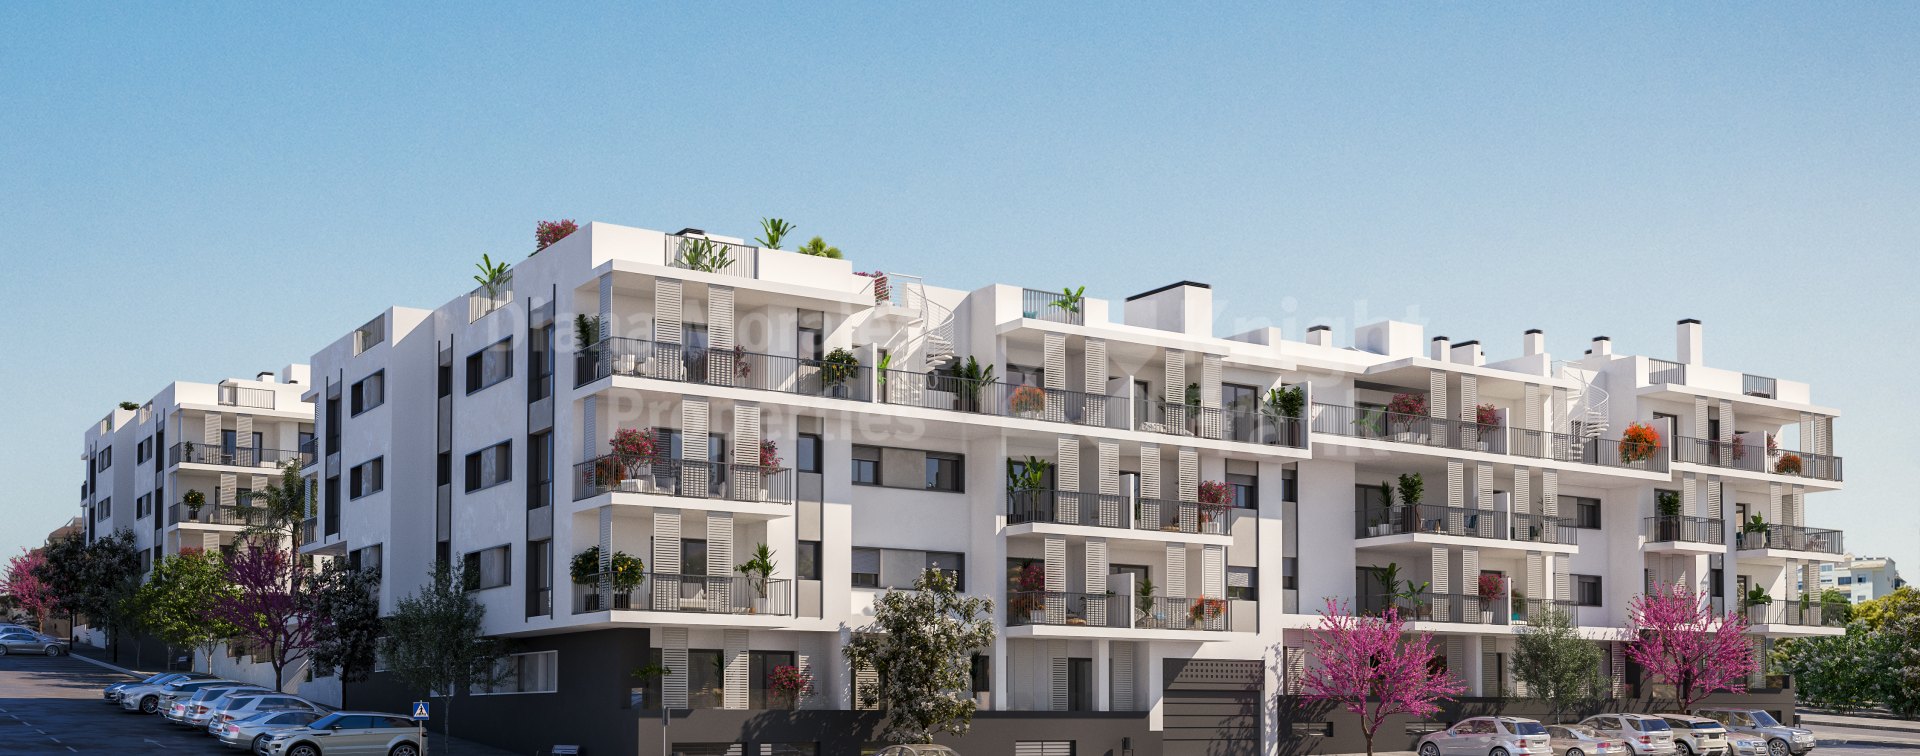 Isidora Living, Новый комплекс апартаментов в 5 минутах ходьбы от пляжа Эстепоны